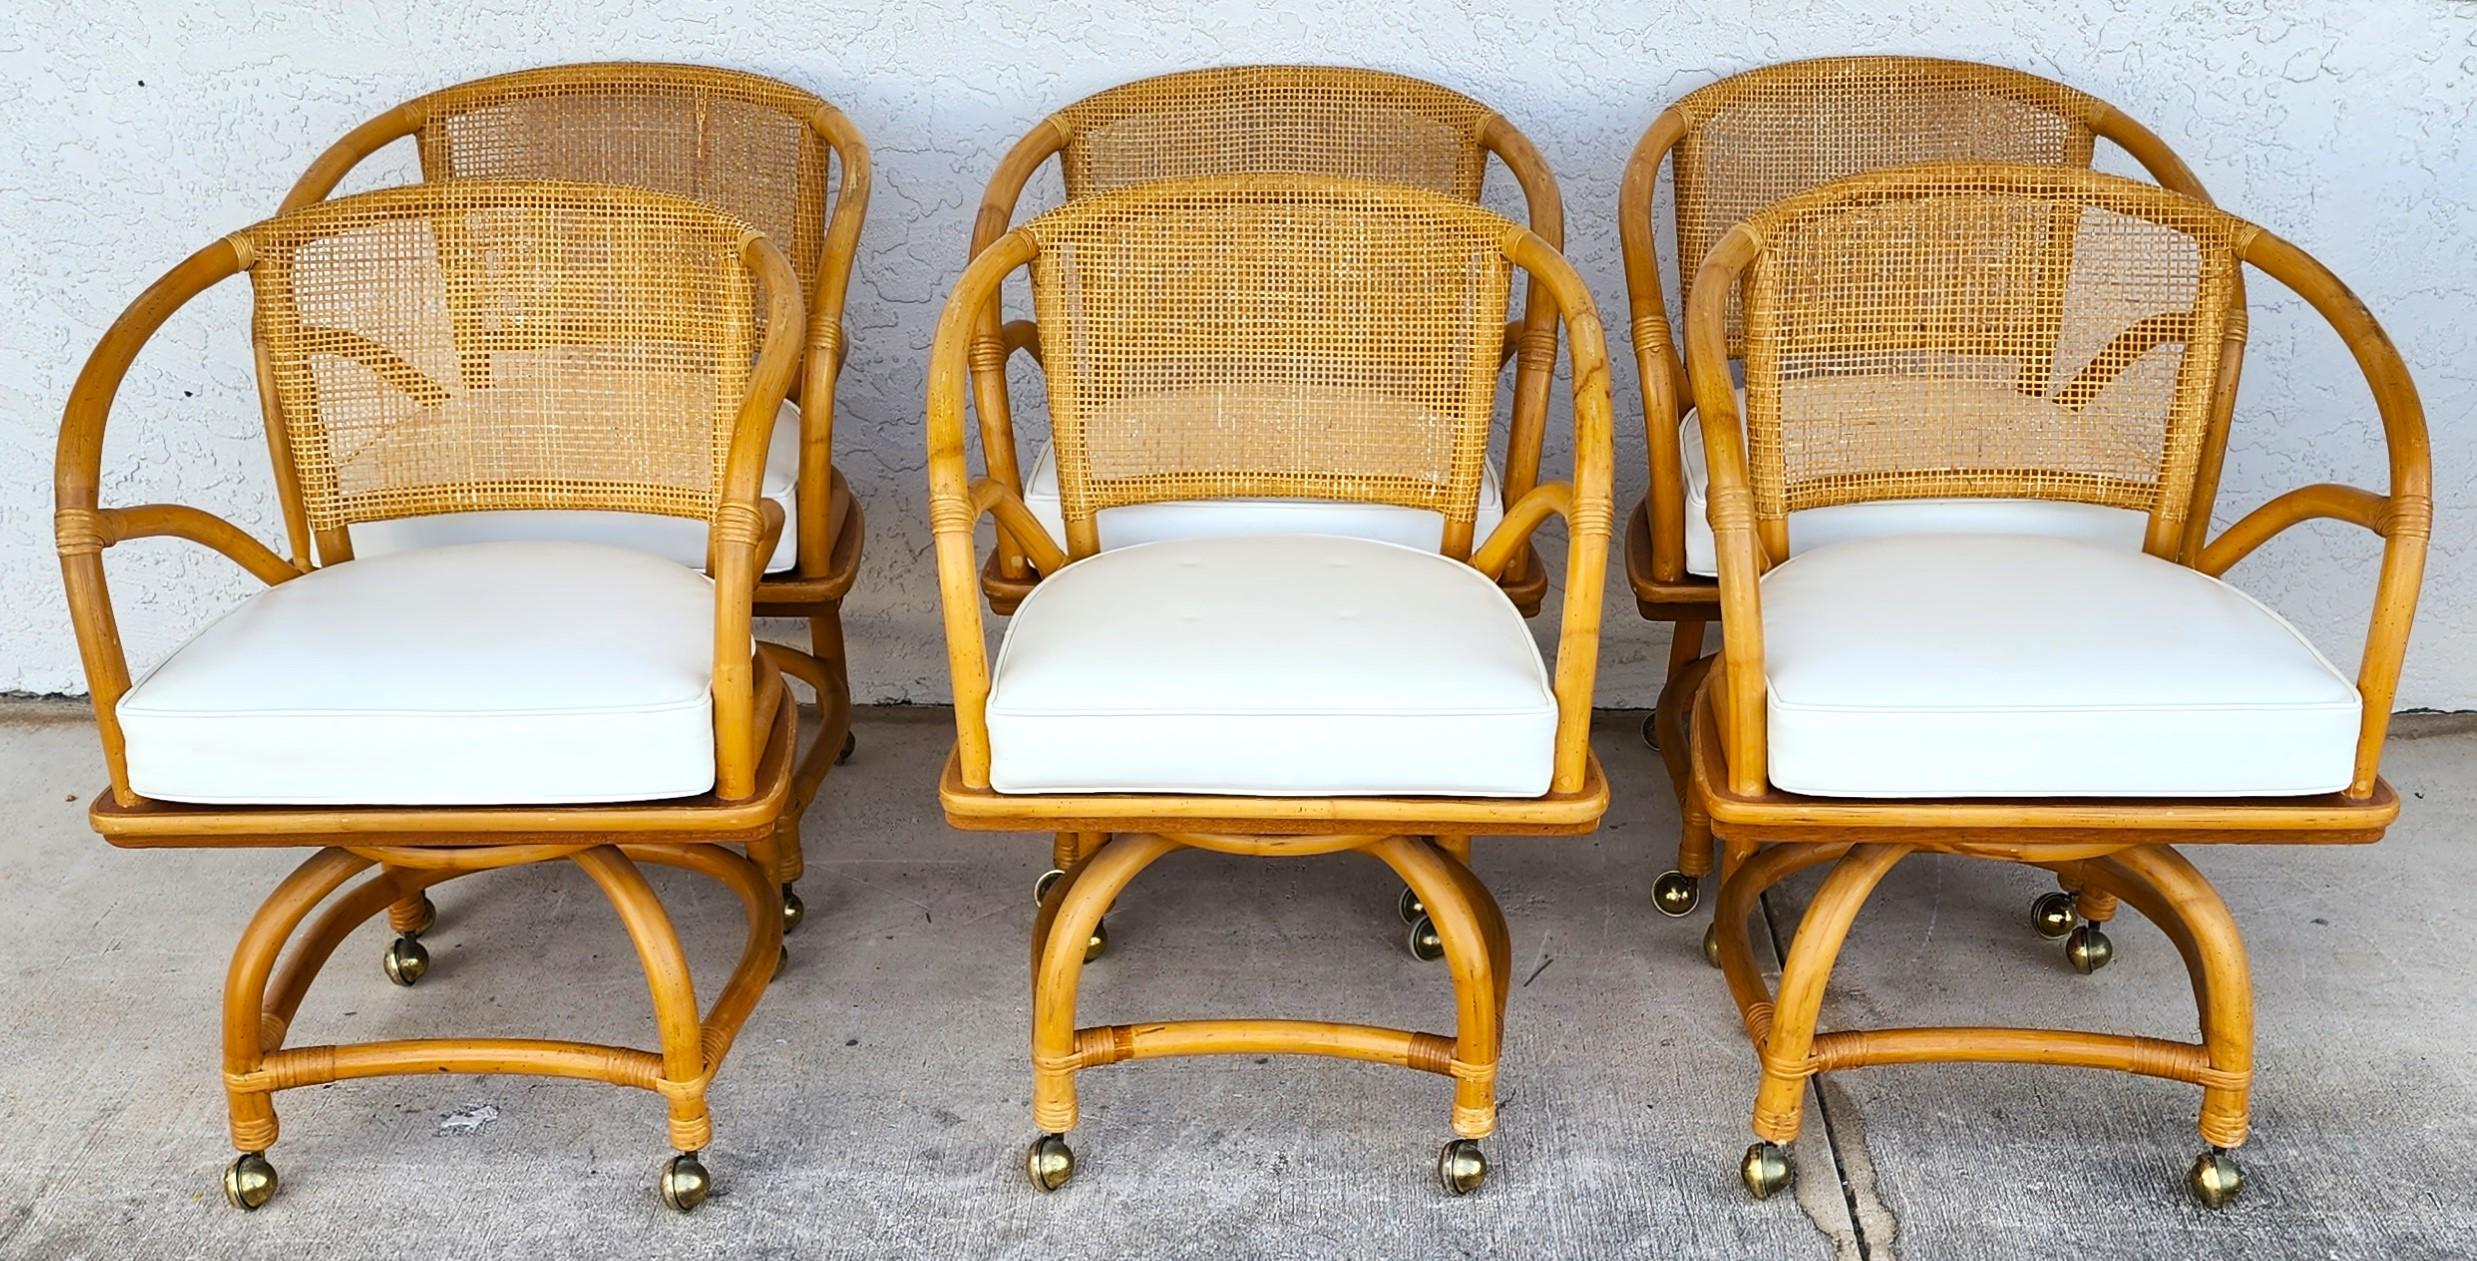 Angebot einer unserer jüngsten Palm Beach Estate Fine Furniture Acquisitions of A
6er-Set 1970er Jahre Bambus Rohrrücken & Rattan Ess- oder Spielstühle mit Dreh- & Rollfunktion von FICKS REED.
Mit umkehrbaren luftgepolsterten Vinylsitzen.

Ungefähre